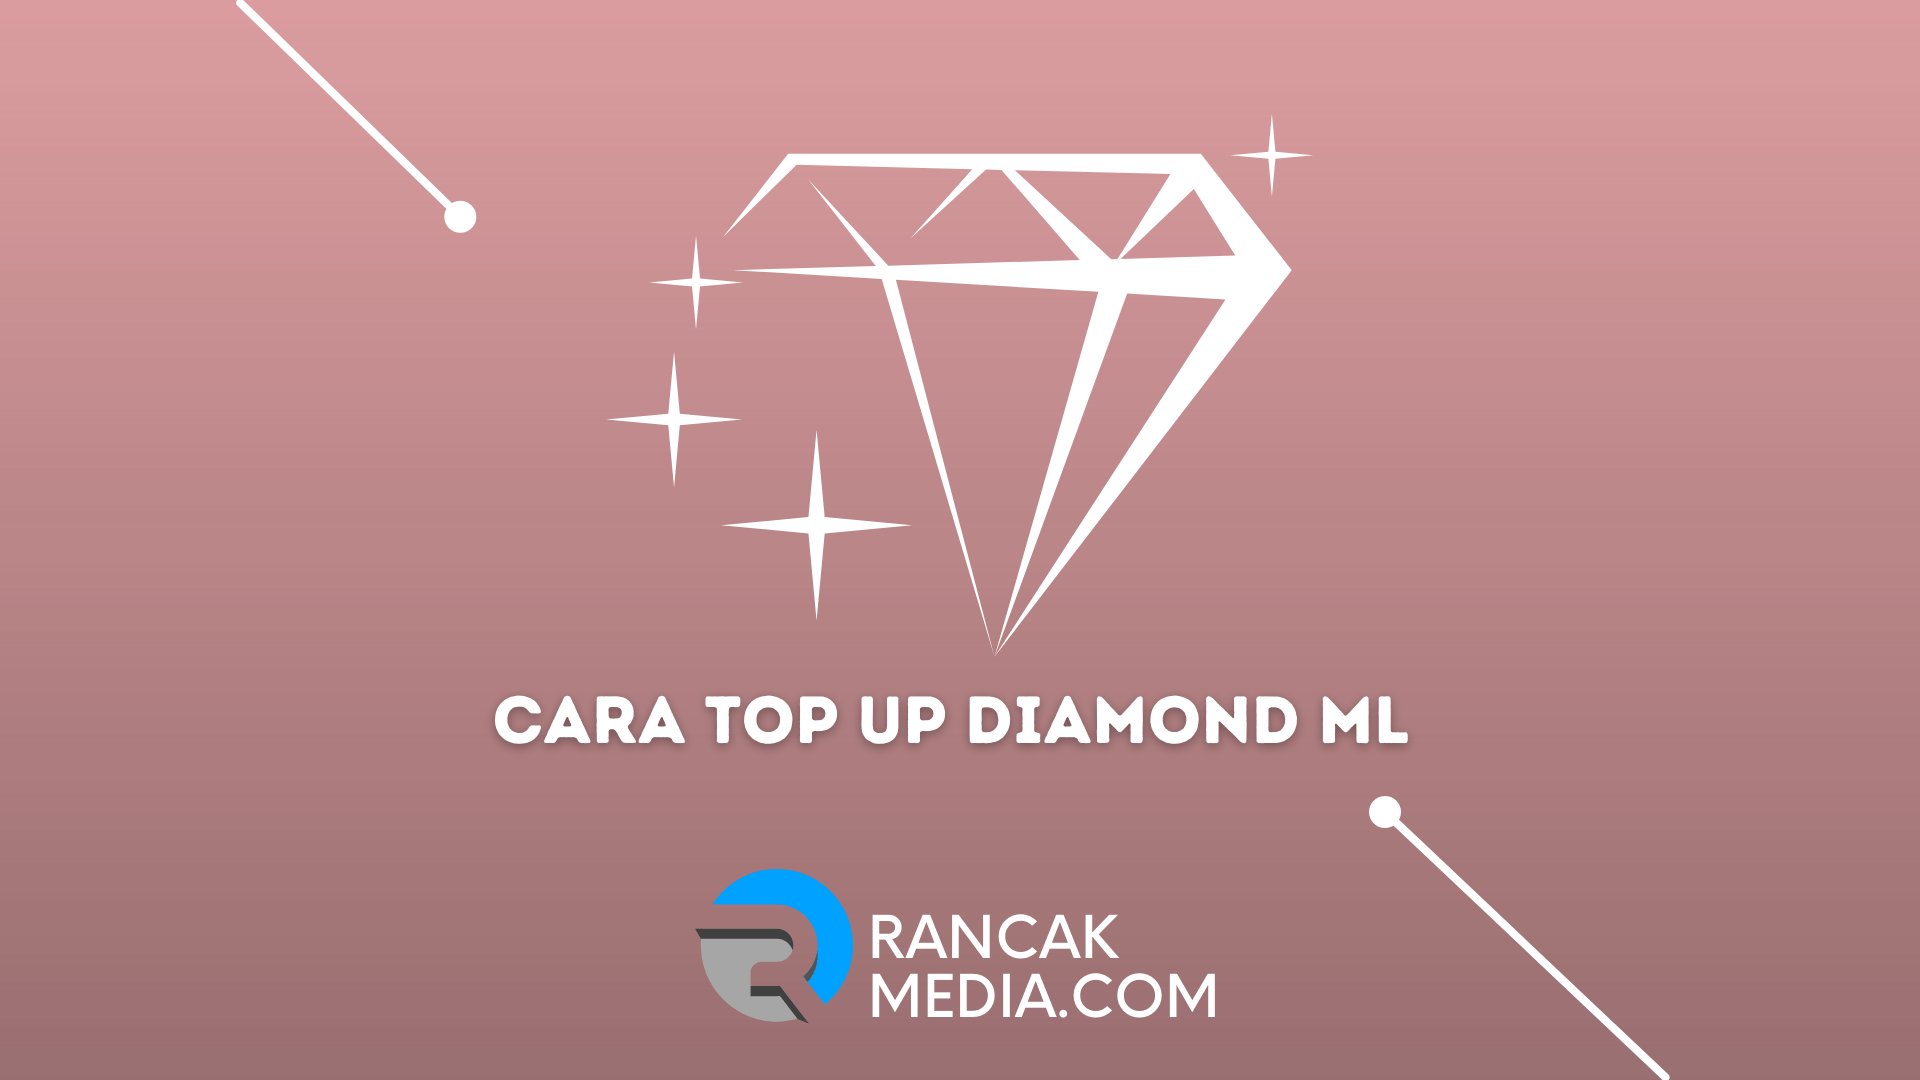 Top Up Mobile Legend Tokopedia. Cara Top Up Diamond ML via Google Play dan Tokopedia